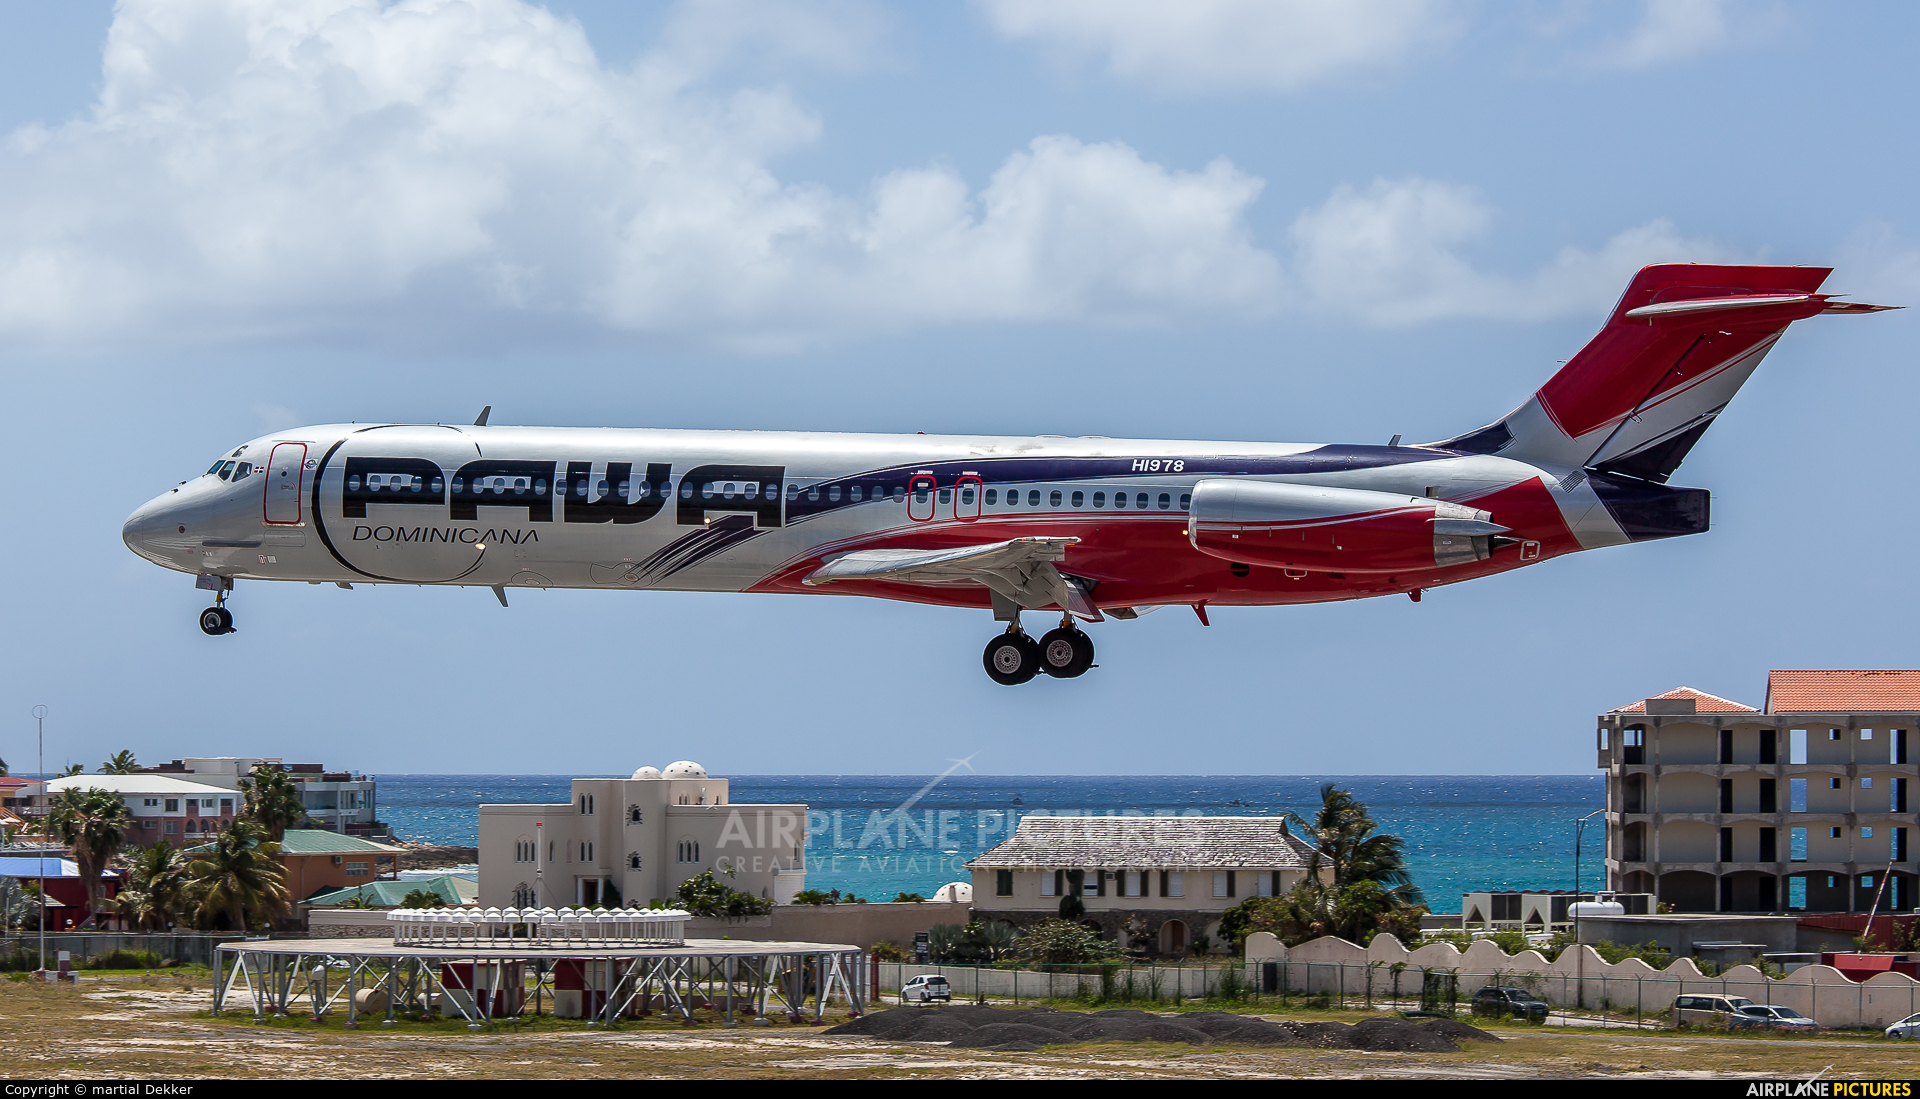 PAWA Dominicana HI978 aircraft at Sint Maarten - Princess Juliana Intl